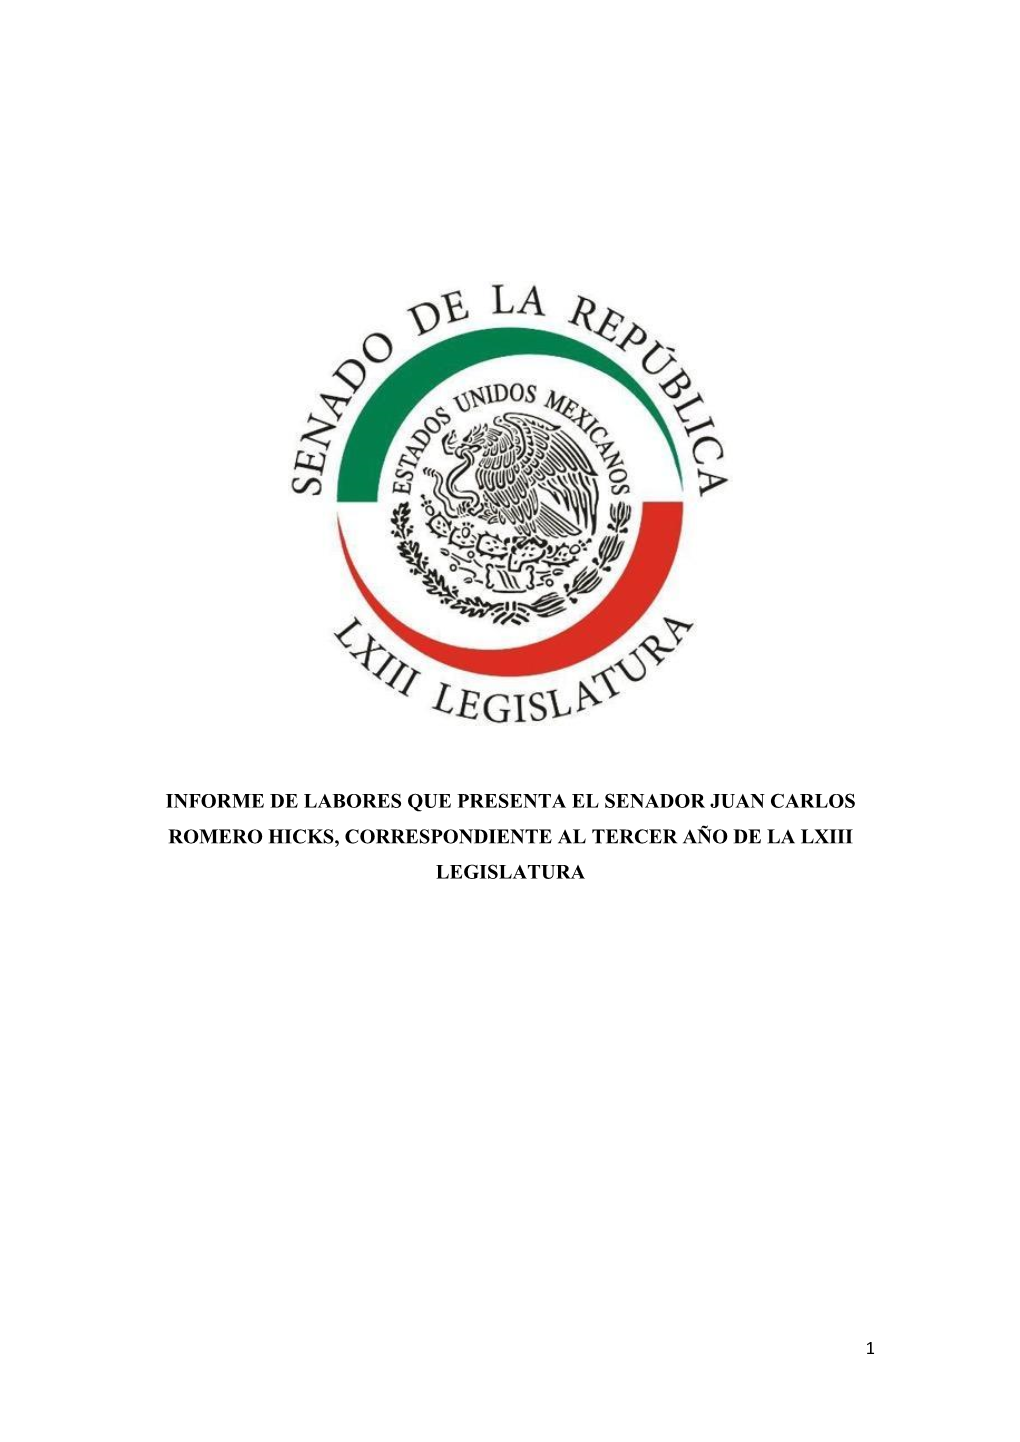 Informe De Labores Que Presenta El Senador Juan Carlos Romero Hicks, Correspondiente Al Tercer Año De La Lxiii Legislatura